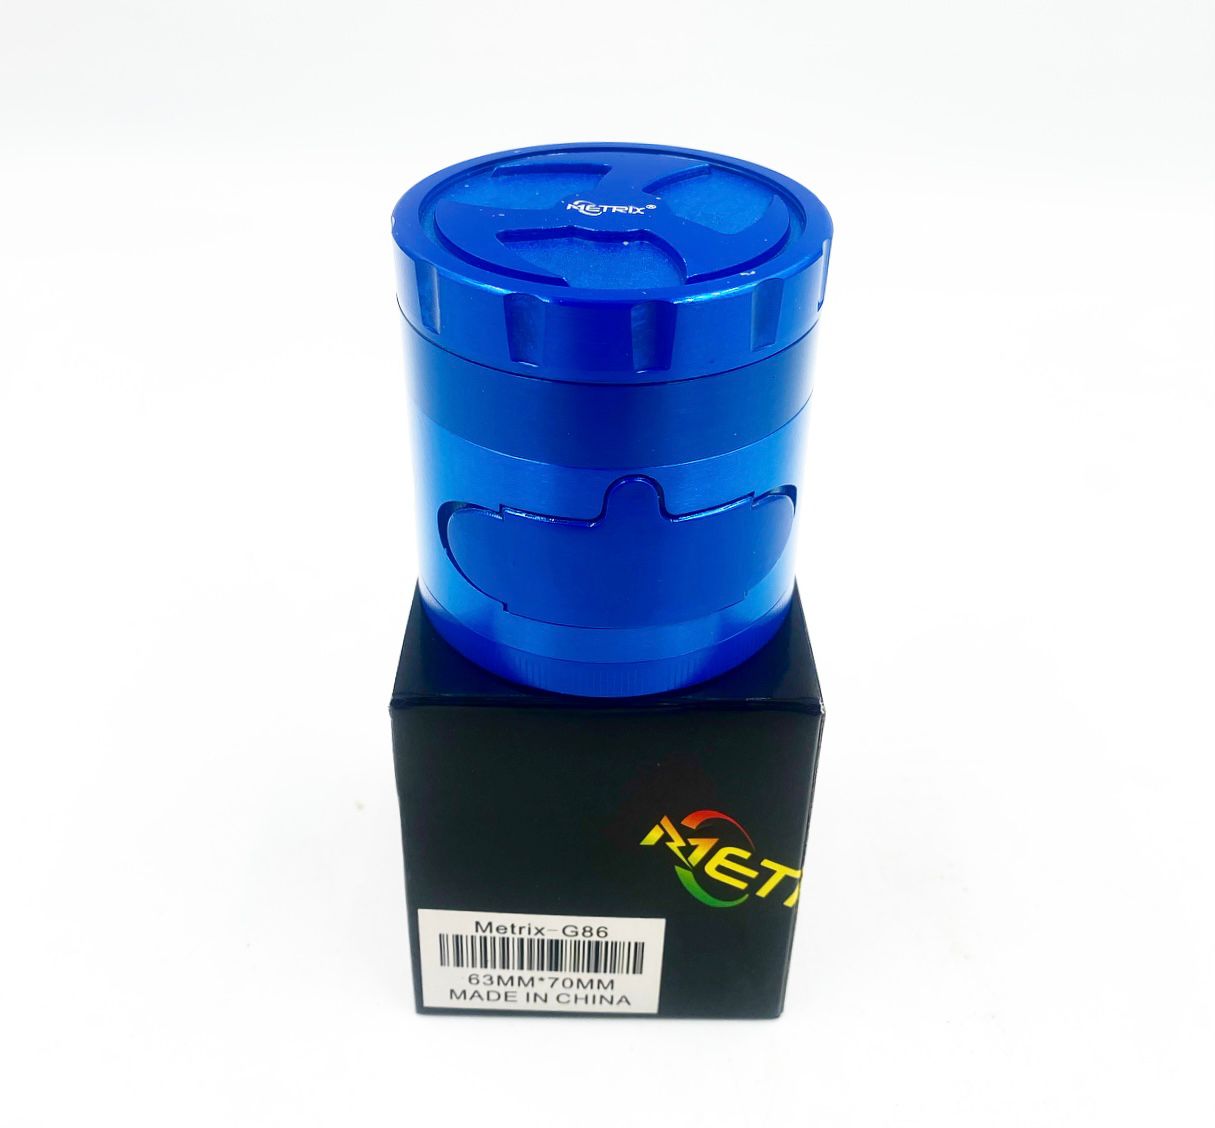 Metrix-G86 Blue Grinder